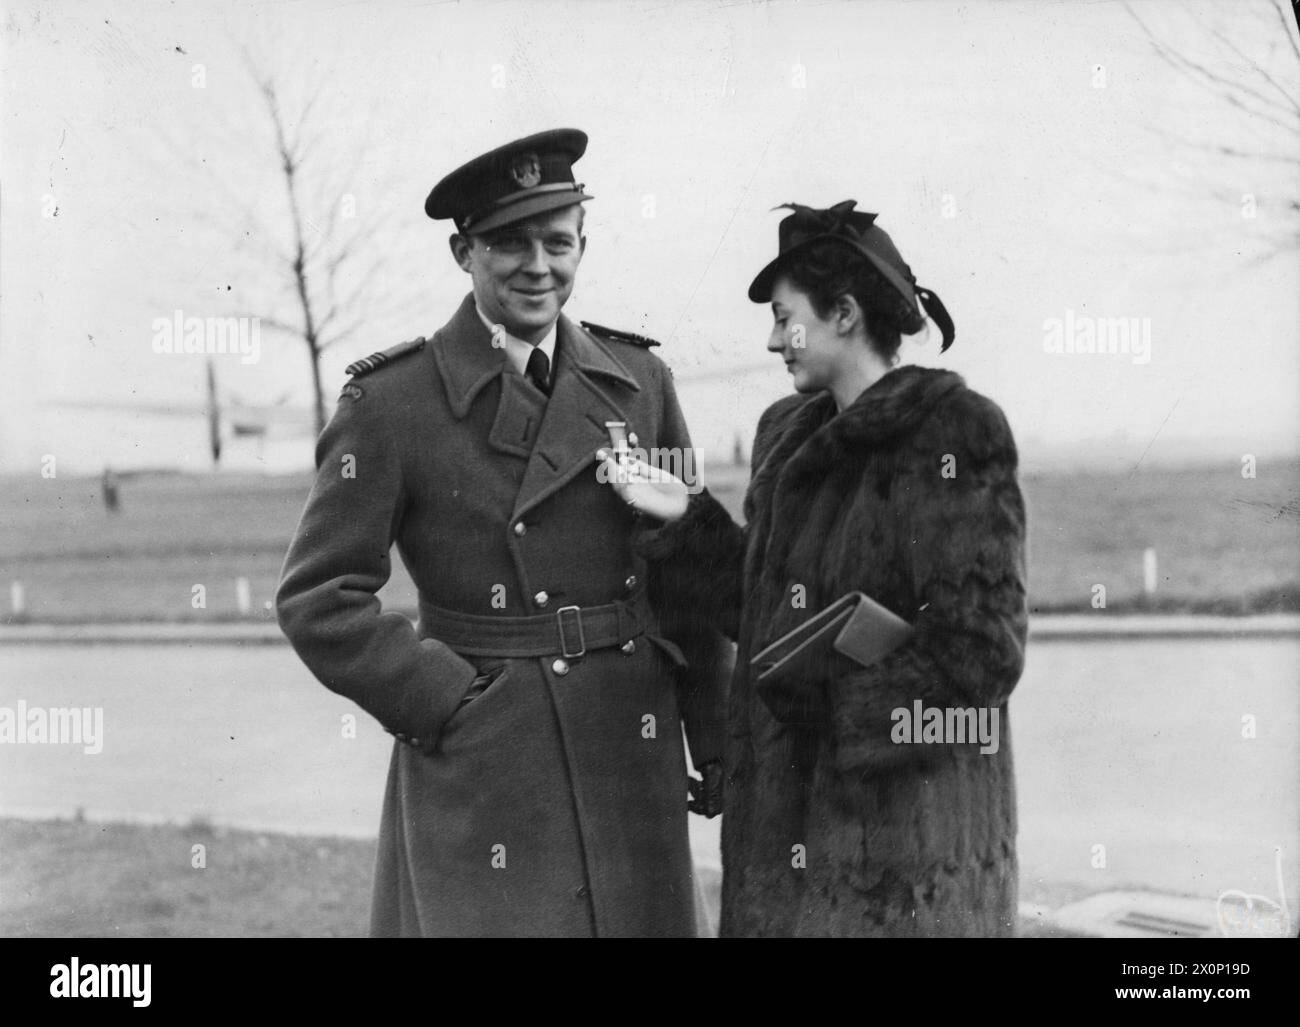 L'ARMÉE DE L'AIR POLONAISE EN GRANDE-BRETAGNE, 1940-1947 - Miss Elizabeth Bullimore de Cuckfield, Sussex, qui a été attaquée au commandant de l'escadre Aleksander Gabszewicz, le commandant de l'escadre no 131 (polonais), regardant le DSO de son fiancé à la RAF Northolt, le 16 novembre 1943. Trois pilotes de chasse polonais ont été décorés de Distinguished Service Orders ce jour-là de l'armée de l'air polonaise, Gabszewicz, Aleksander Klemens, Bullimore, Elizabeth Banque D'Images